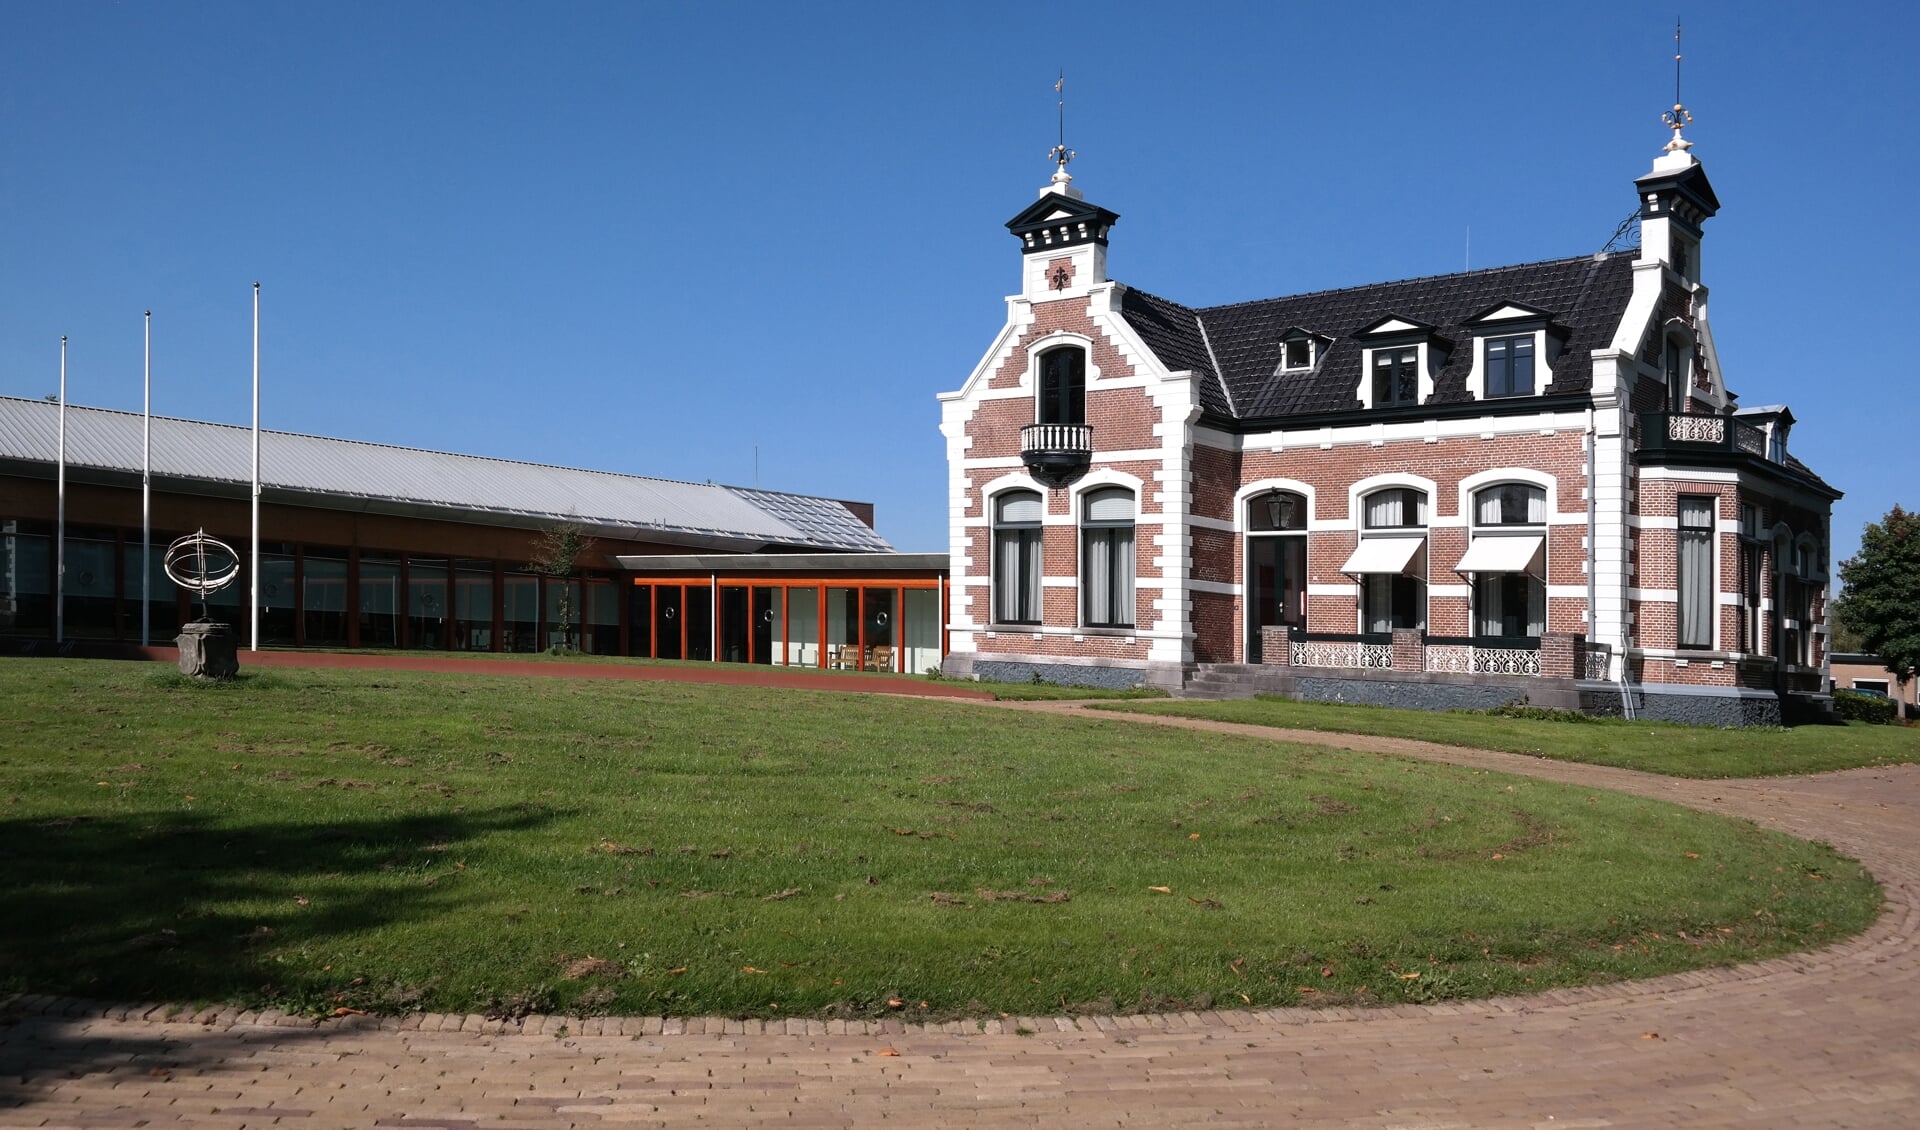 Het gemeentehuis in Kollum. Het oude deel rechts is een monument.